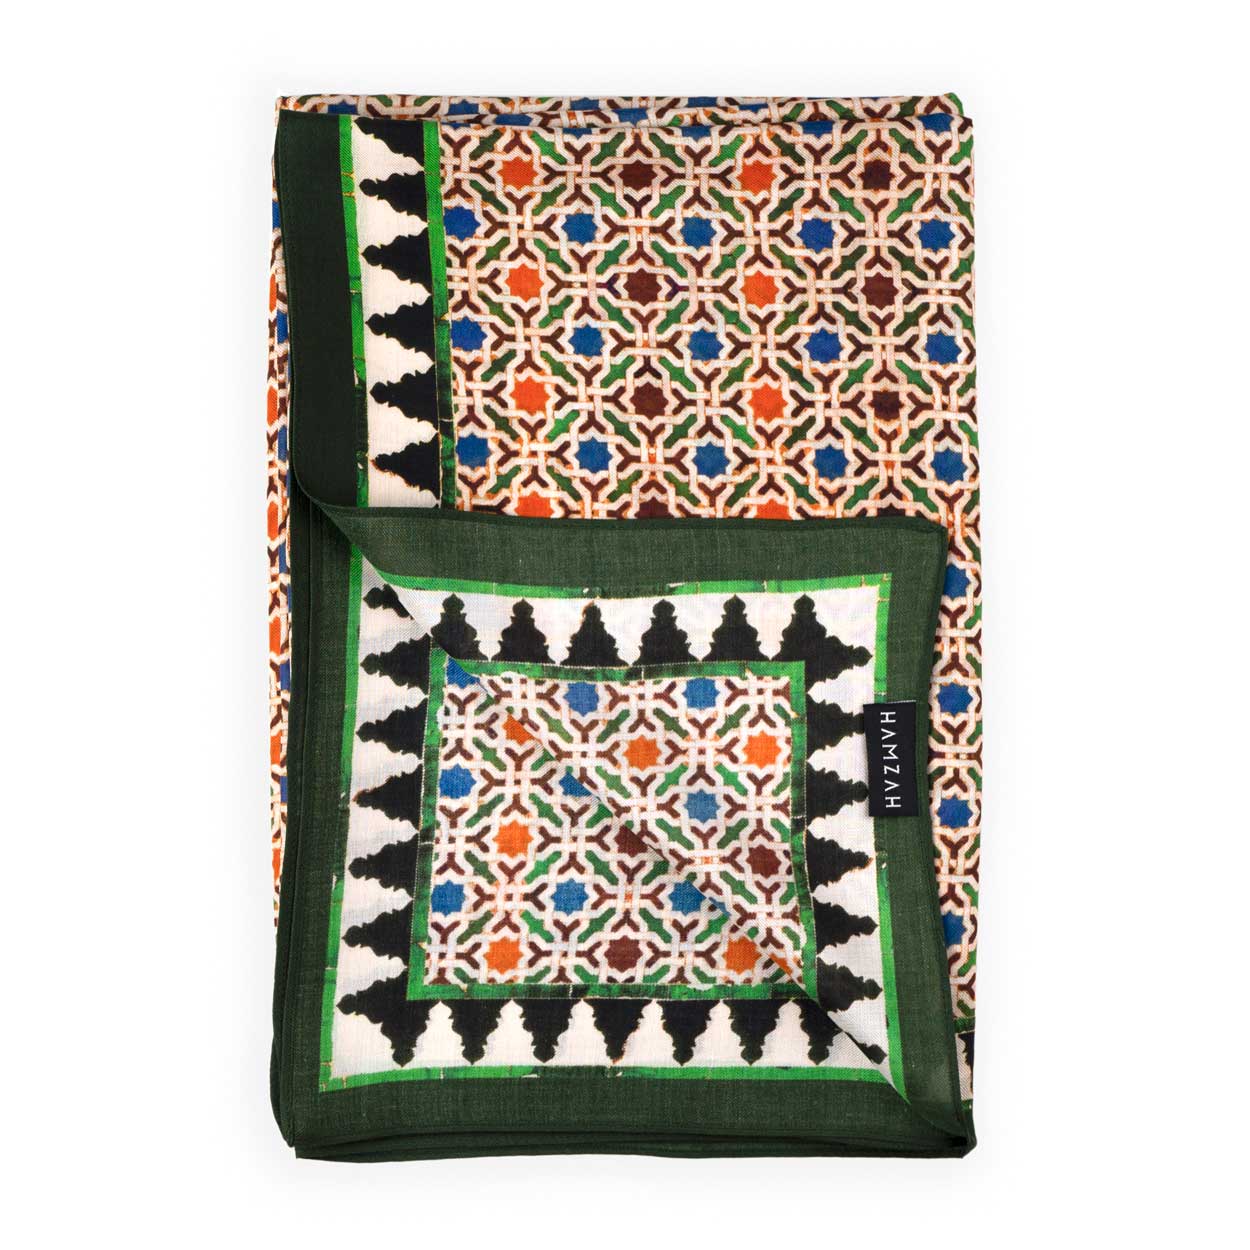 Pañuelo estampado con patrón geométrico inspirado en el arte islámico